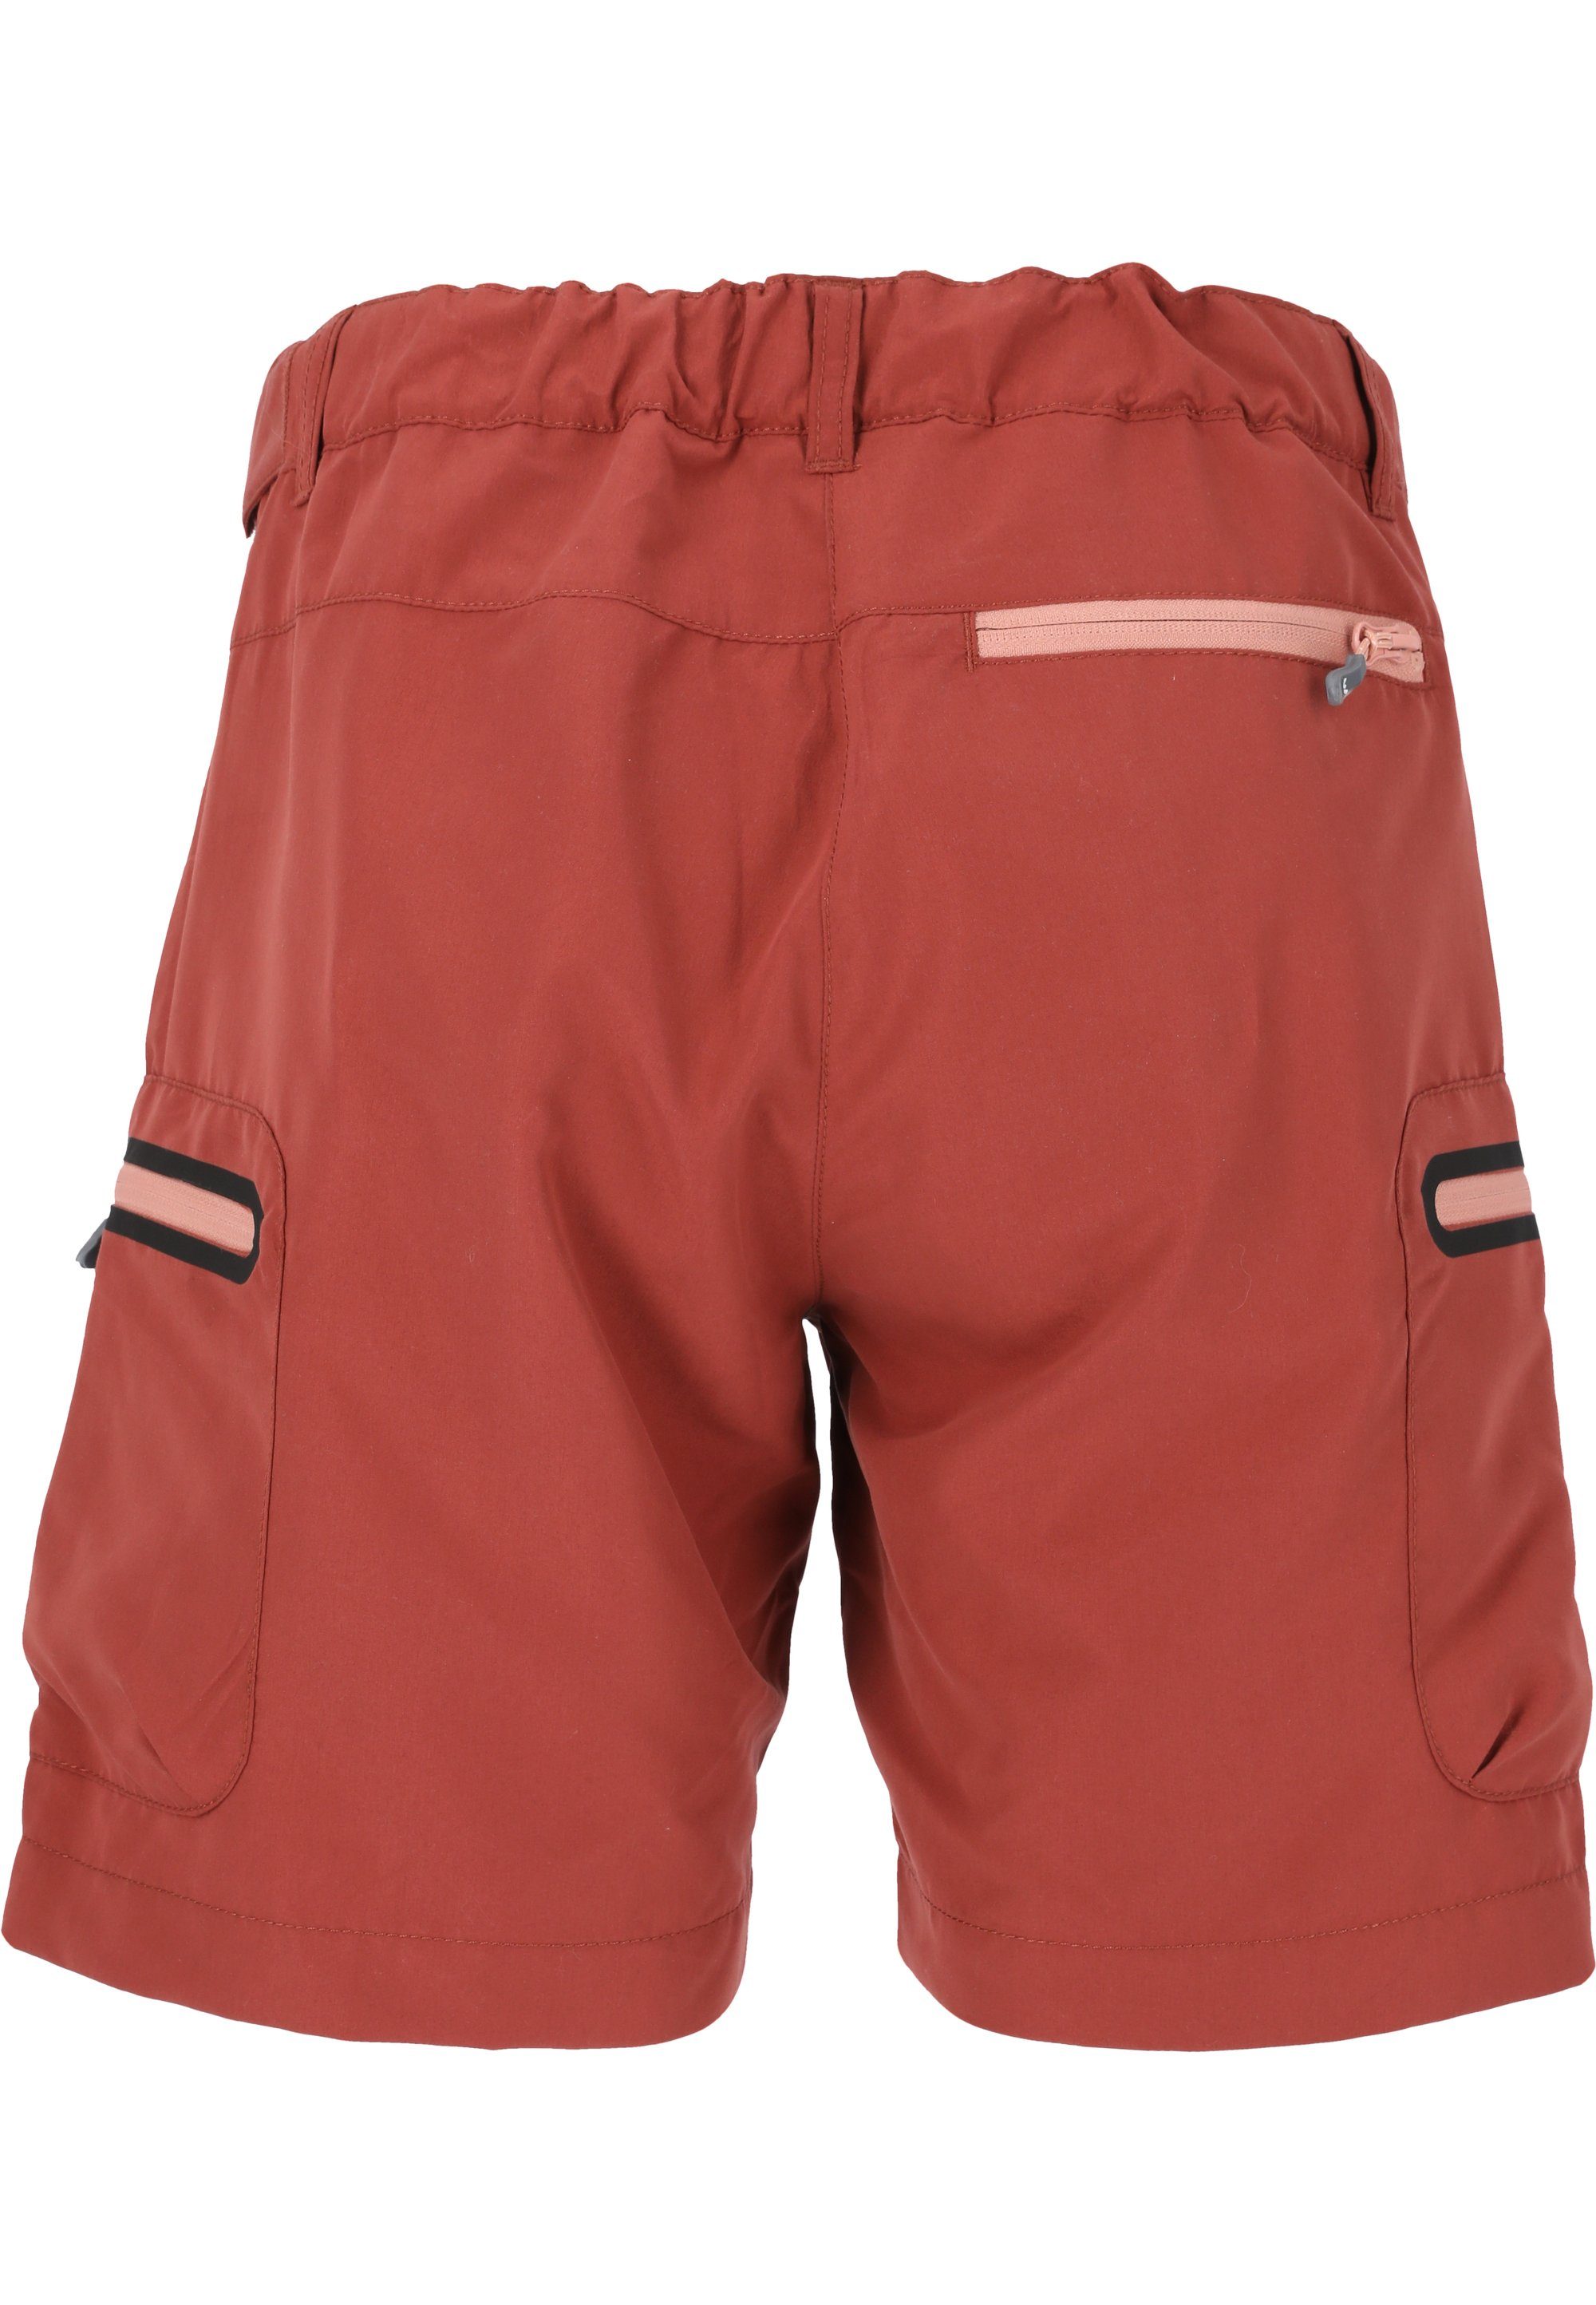 WHISTLER Stian Shorts maroon praktischen Reißverschlusstaschen mit